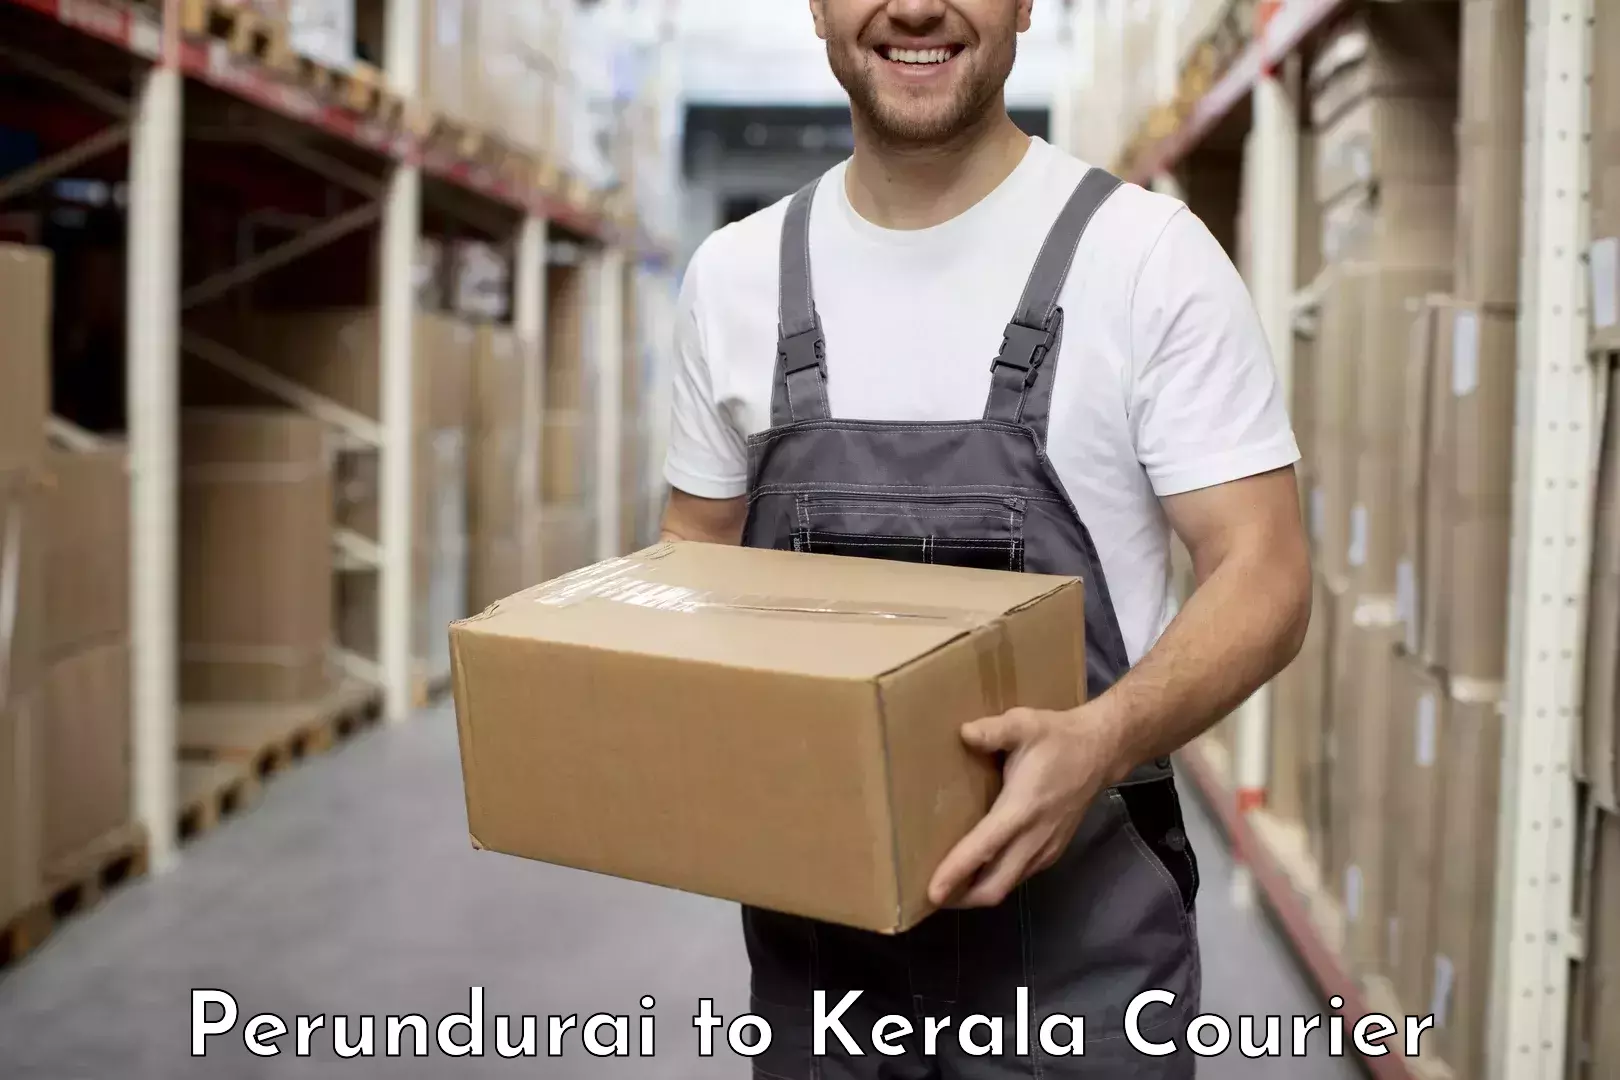 Efficient parcel transport Perundurai to Malappuram